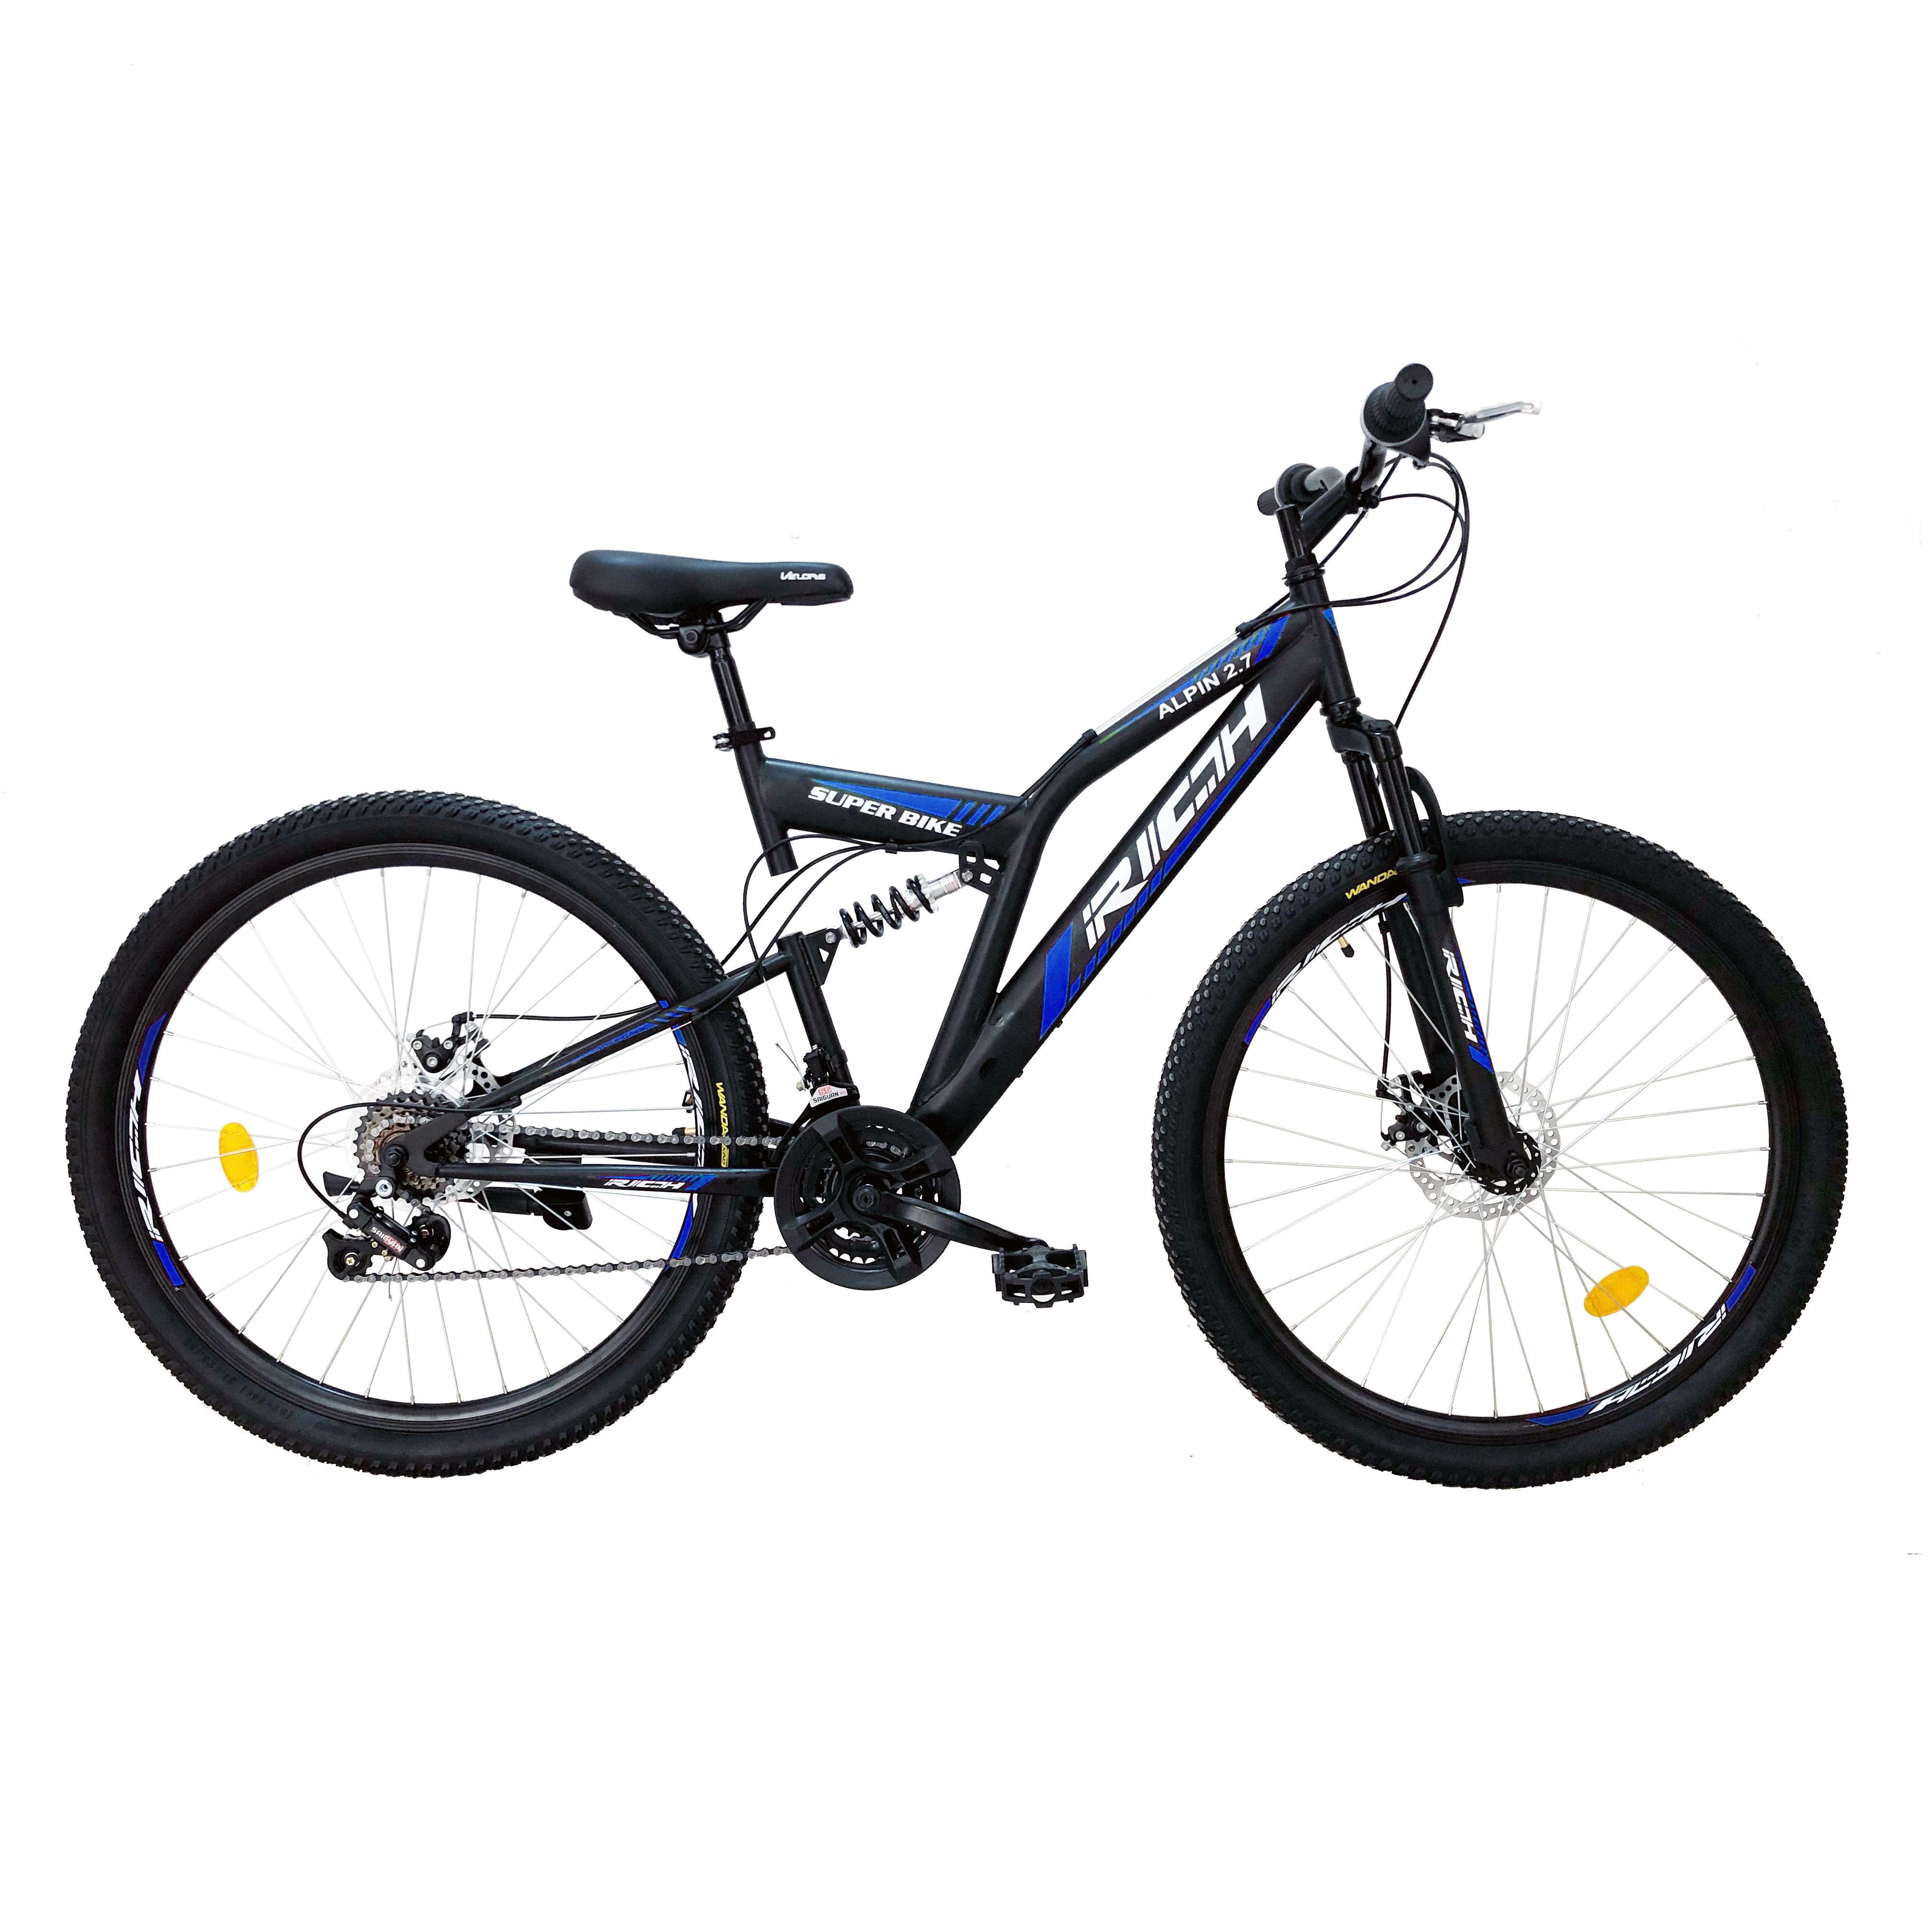 PROMO BICICLETE - Bicicleta MTB-FS, Saiguan Revoshift 18 Viteze, Roti 27.5 Inch, Frane pe Disc, RICH R2750D, Cadru Negru cu Design Albastru, https:carpatsport.ro